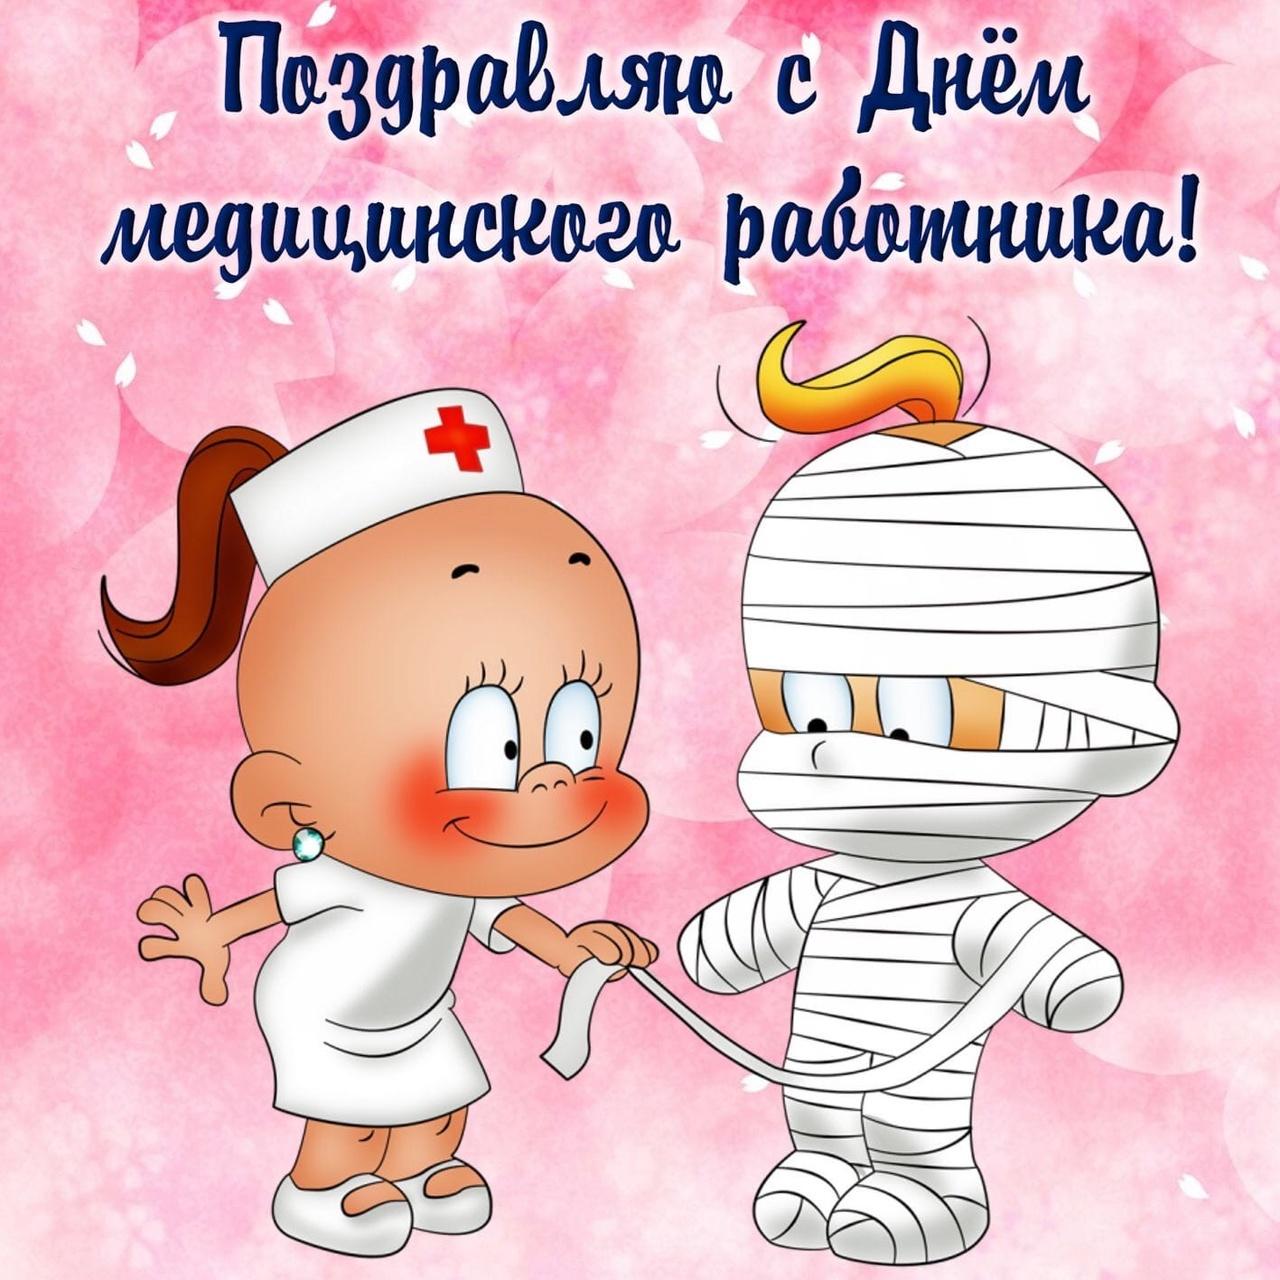 Фото С днём медицинского работника: лучше открытки с поздравлениями докторам 19 июня 2022 года 14